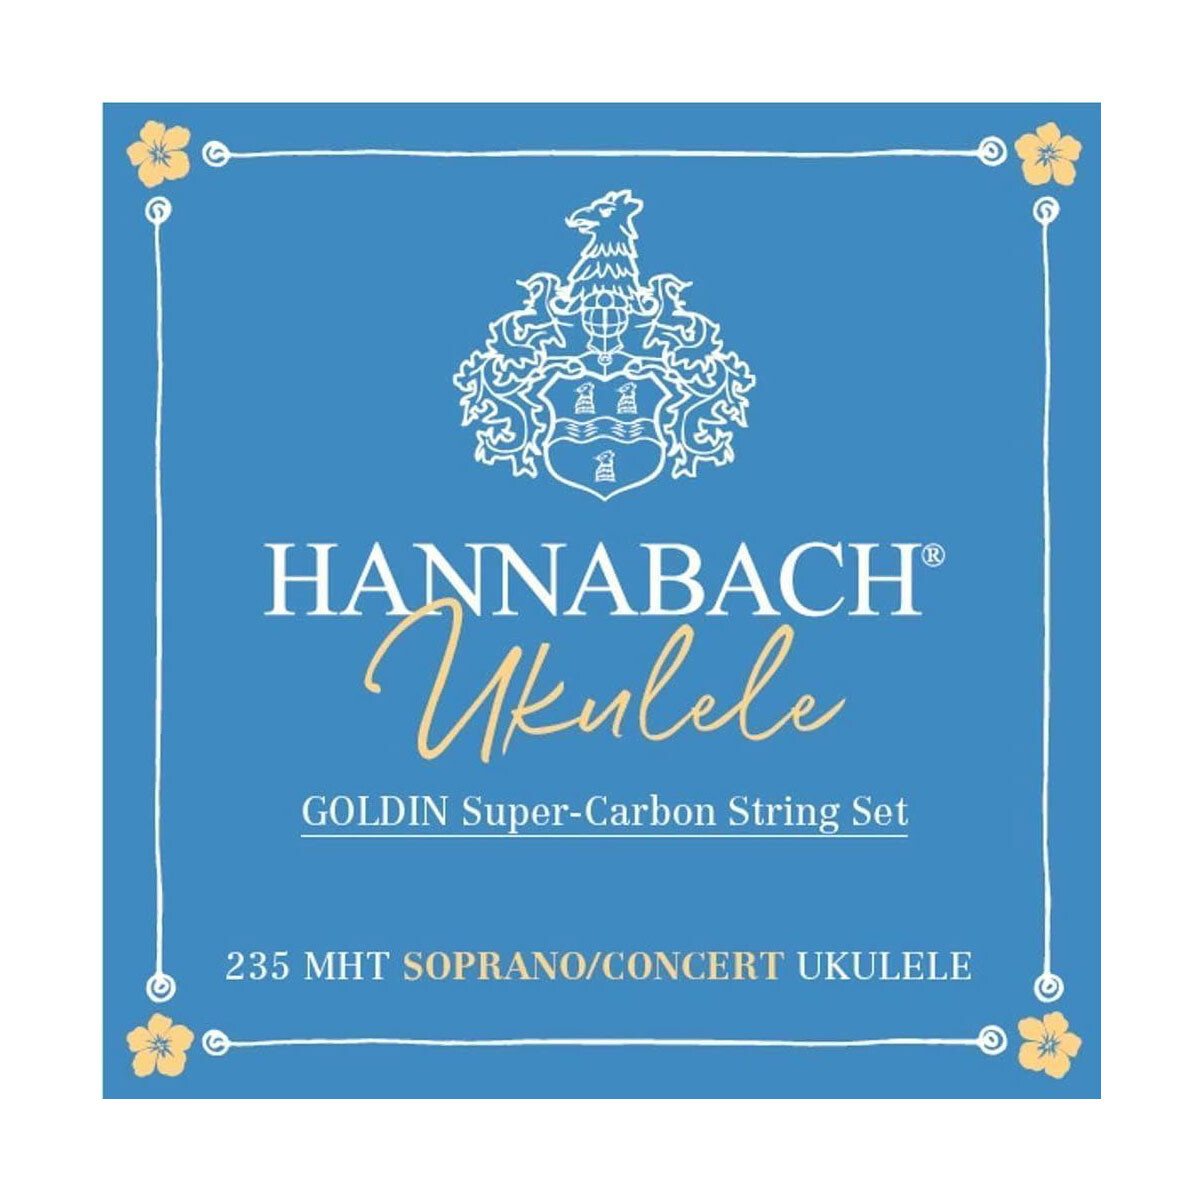 Encordado ukelele soprano/concierto Hannabach 235 